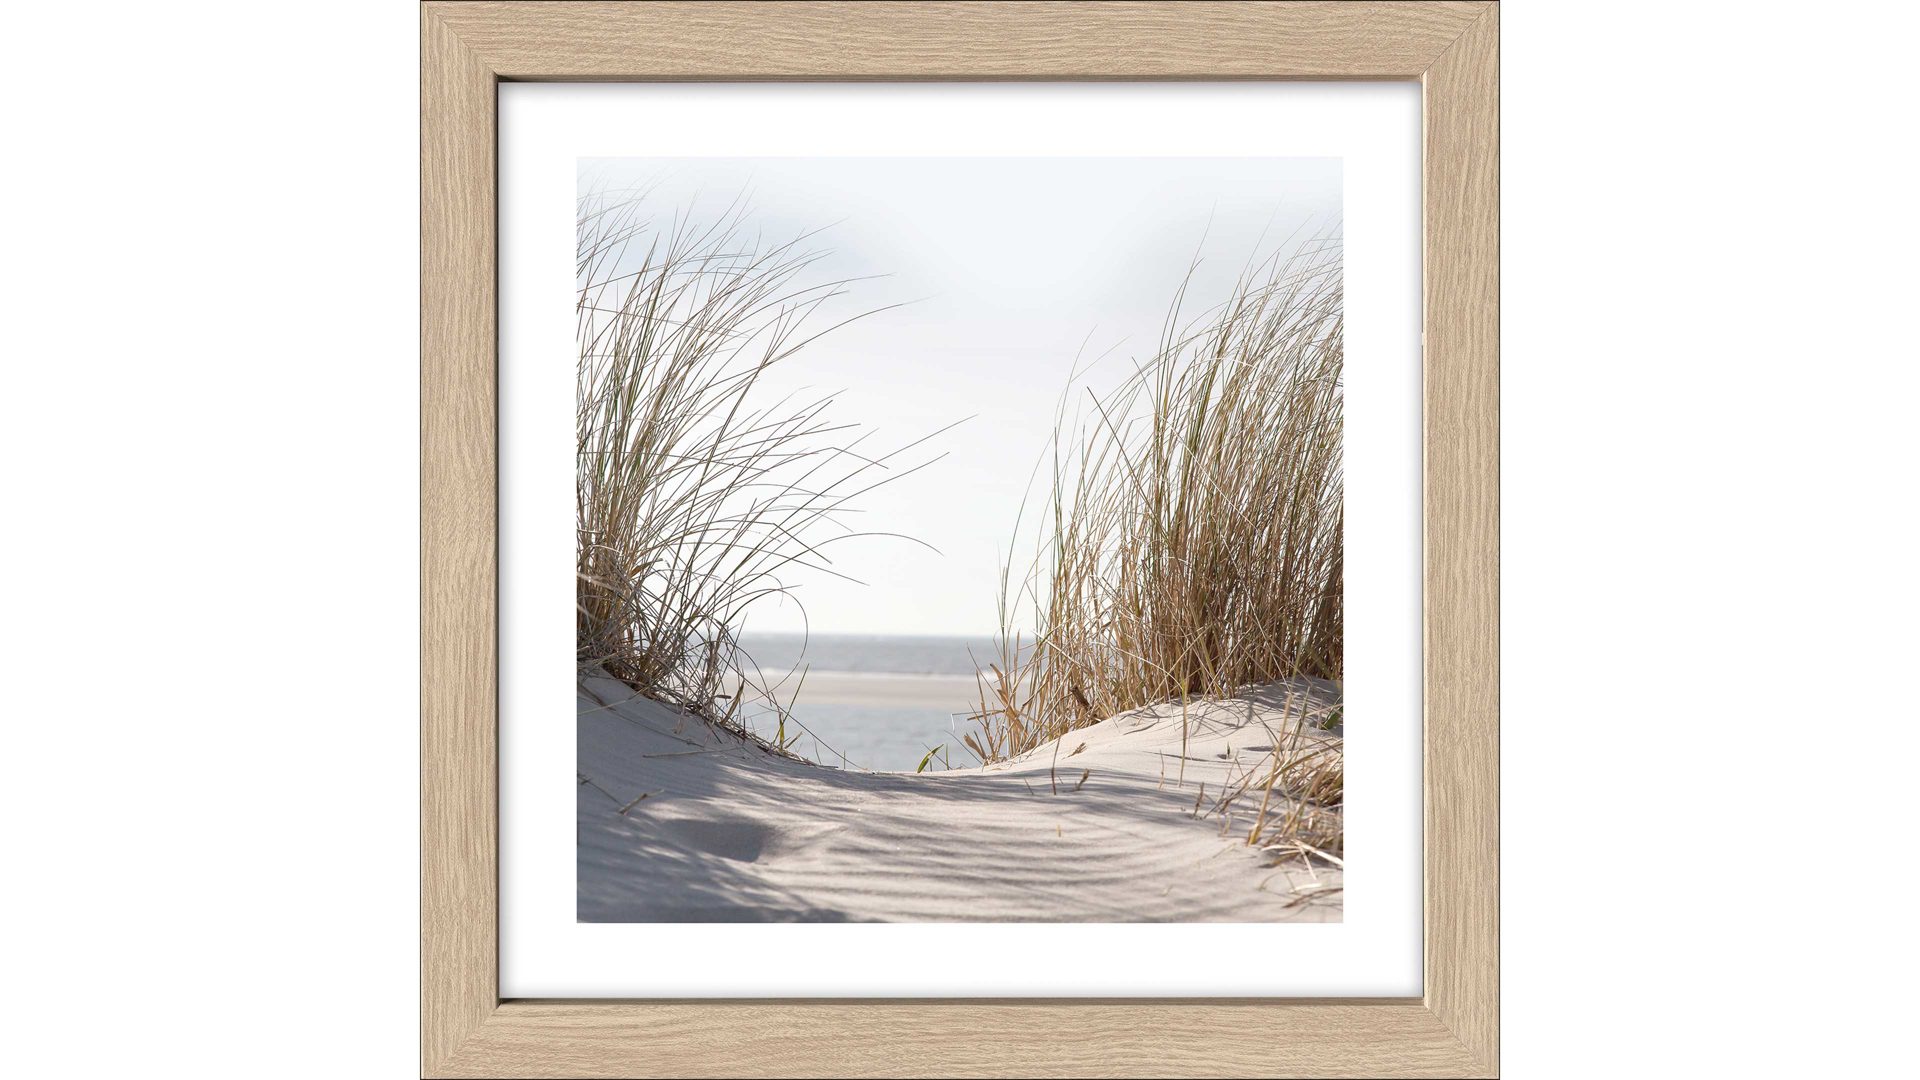 Kunstdruck Pro®art bilderpalette aus Karton / Papier / Pappe in Weiß PRO®ART Kunstdruck Nordic Beach Atmosphere V Eiche, Strandmotiv - ca. 35 x 35 cm